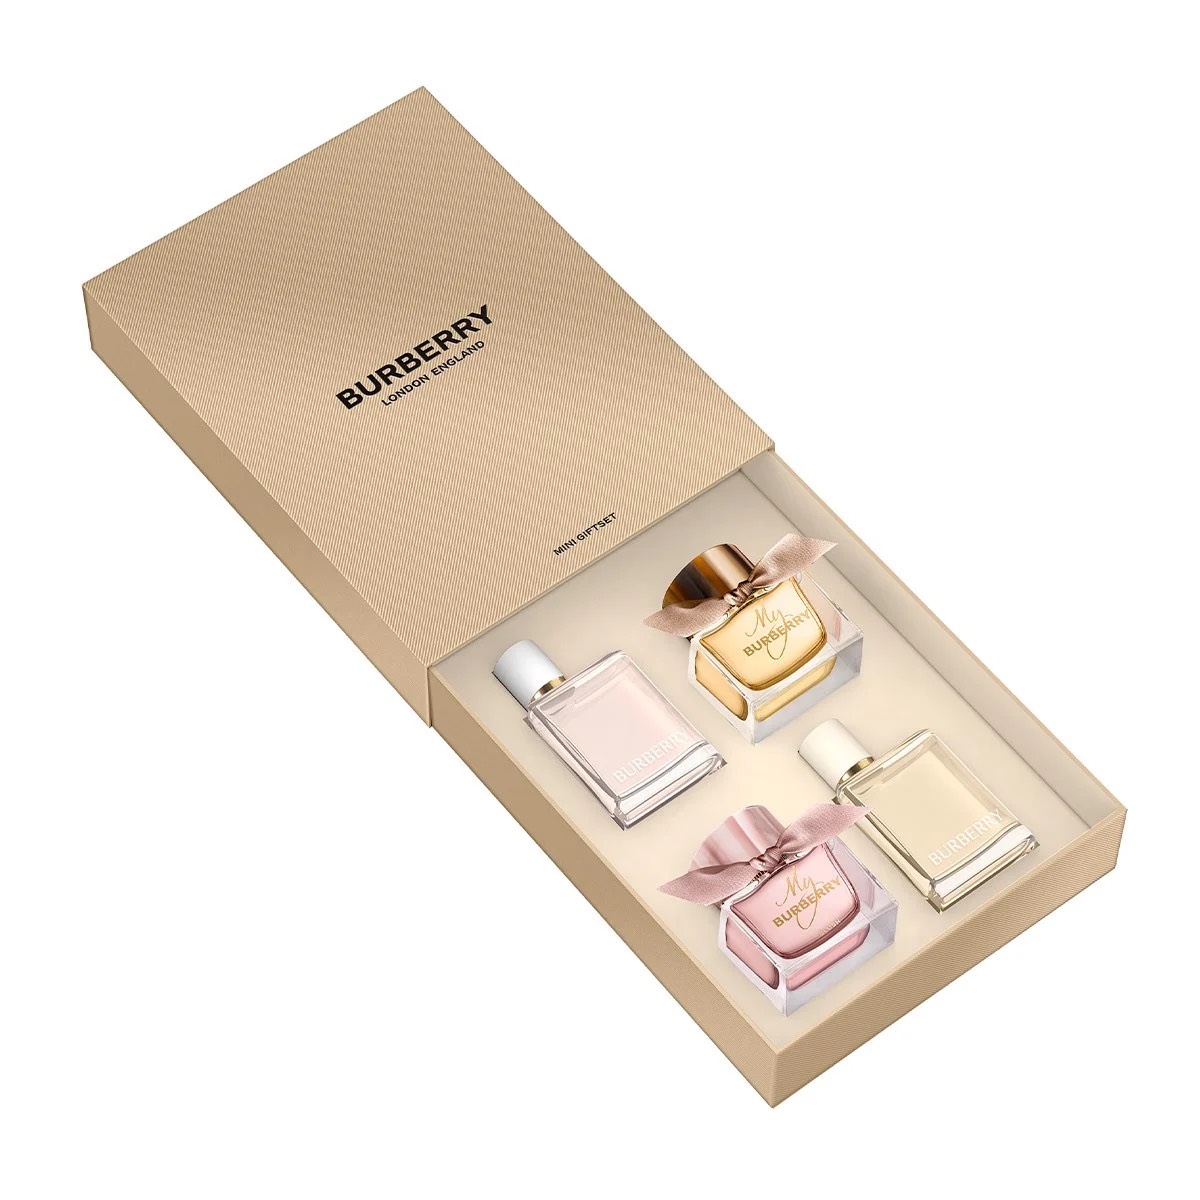 Gift set Burberry Mini London England 4pcs Linh Perfume